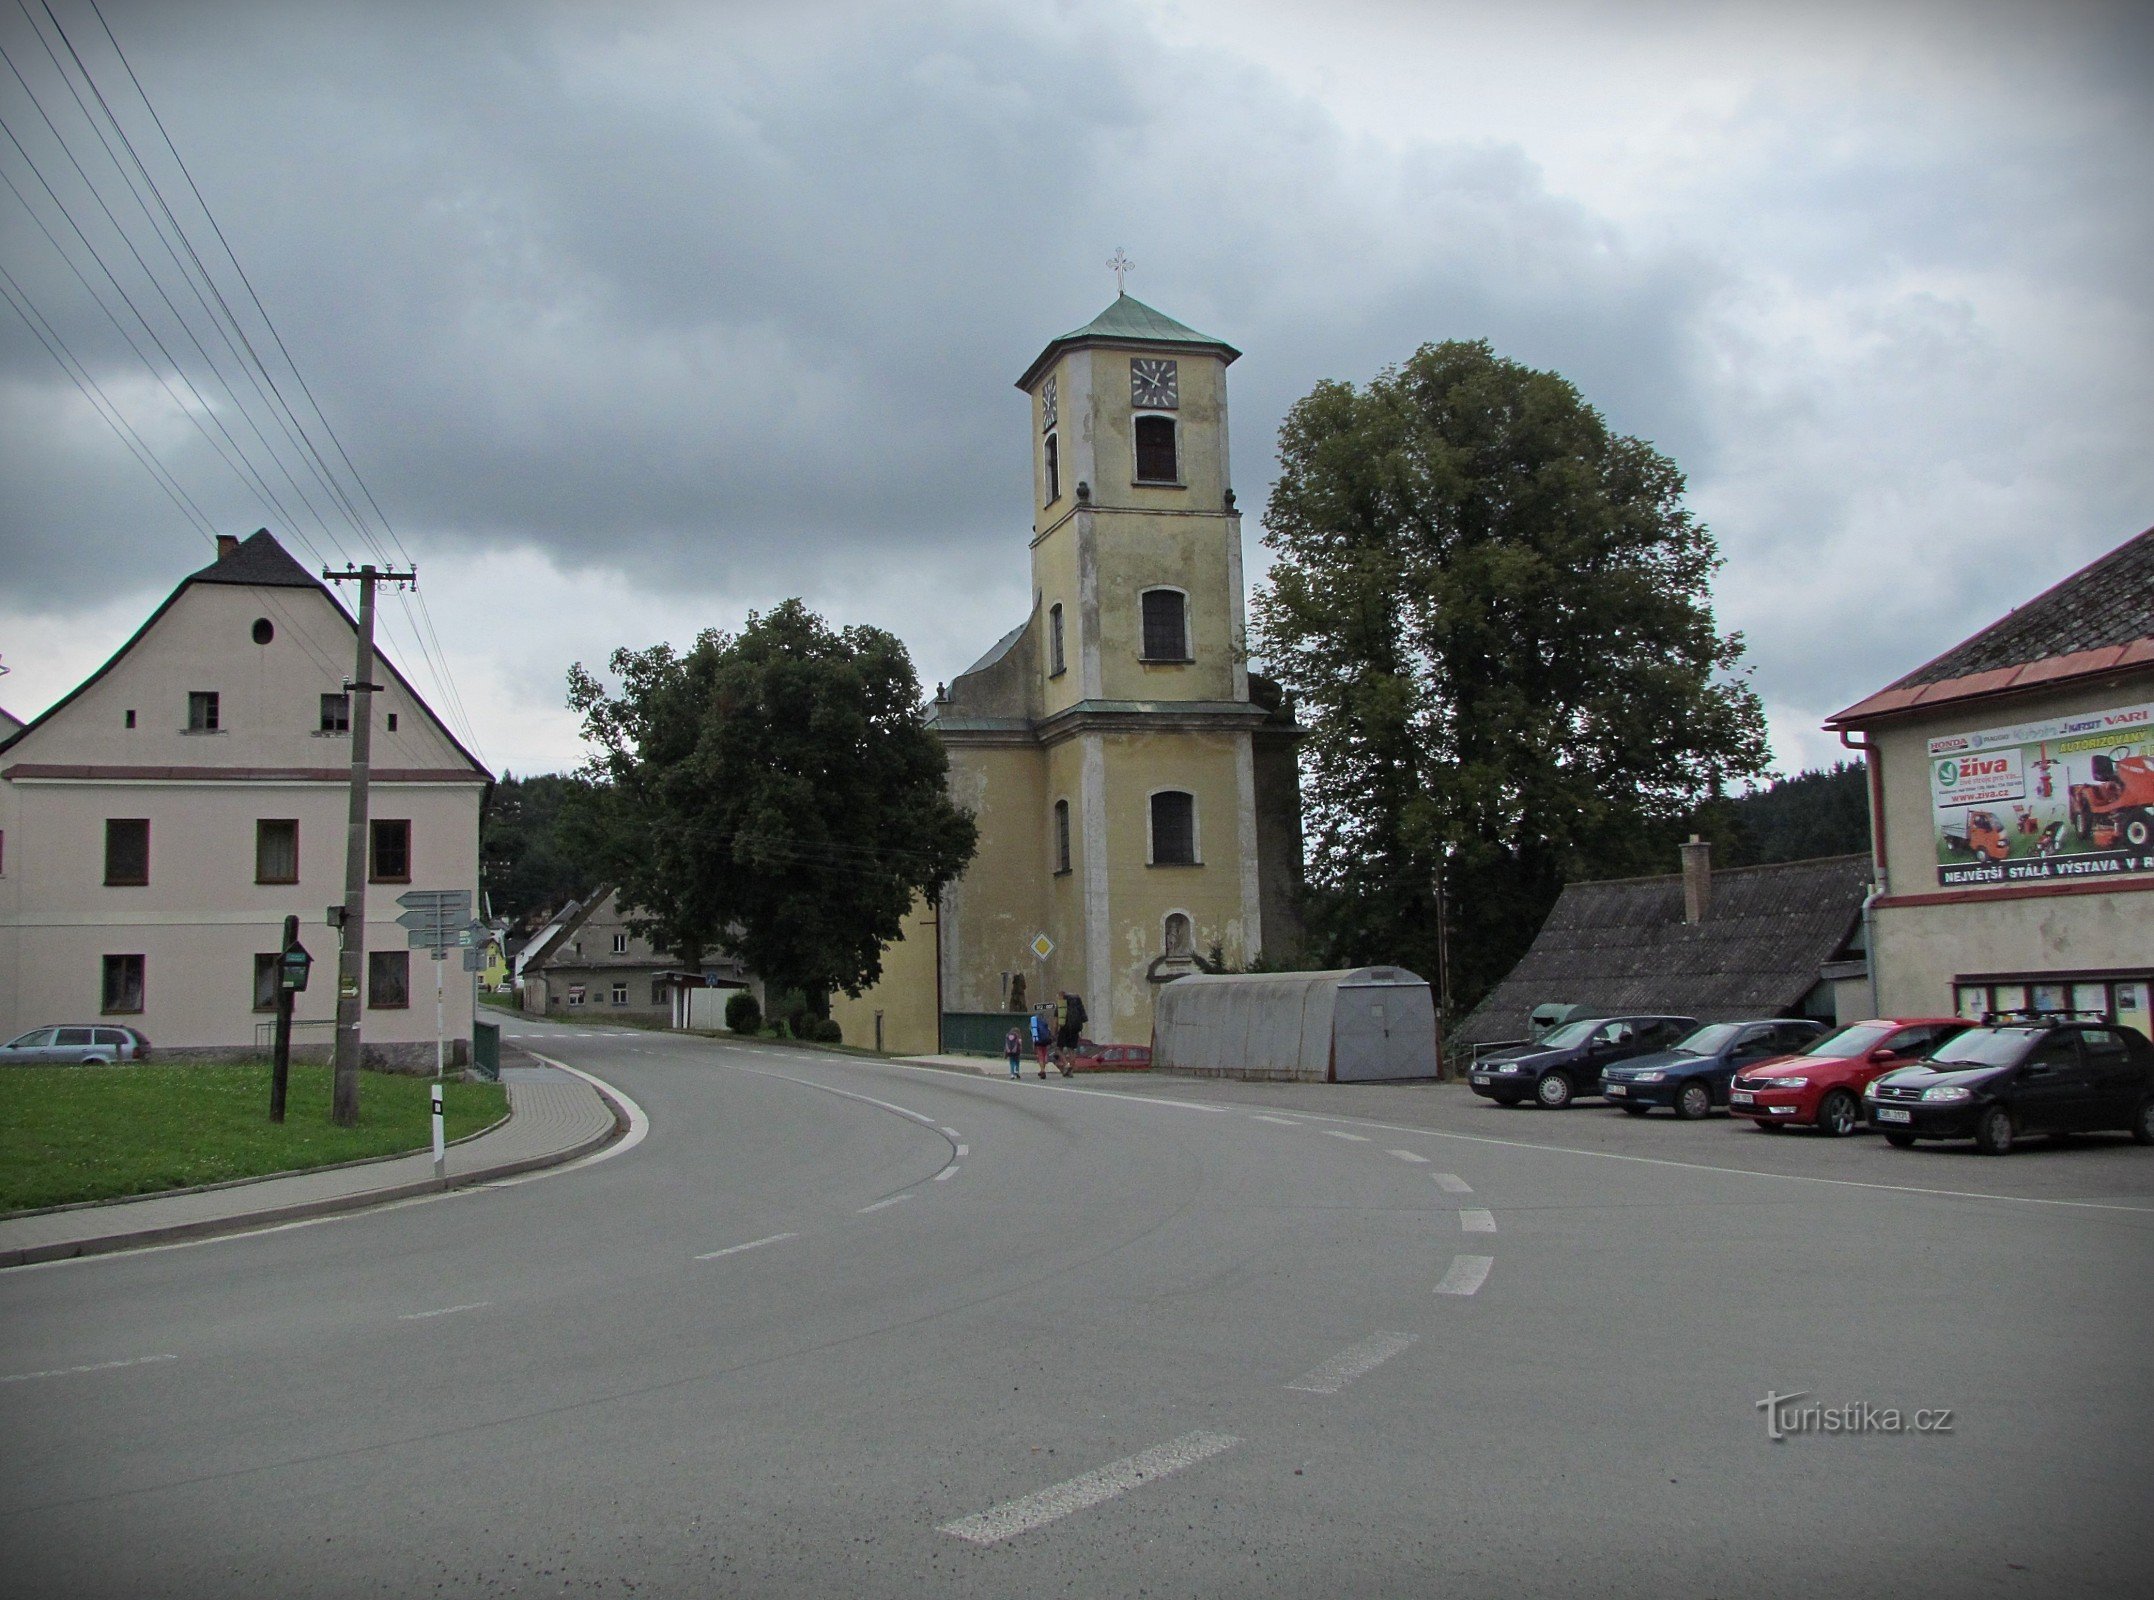 Mladkov - kerk van St. Johannes de Doper en andere attracties